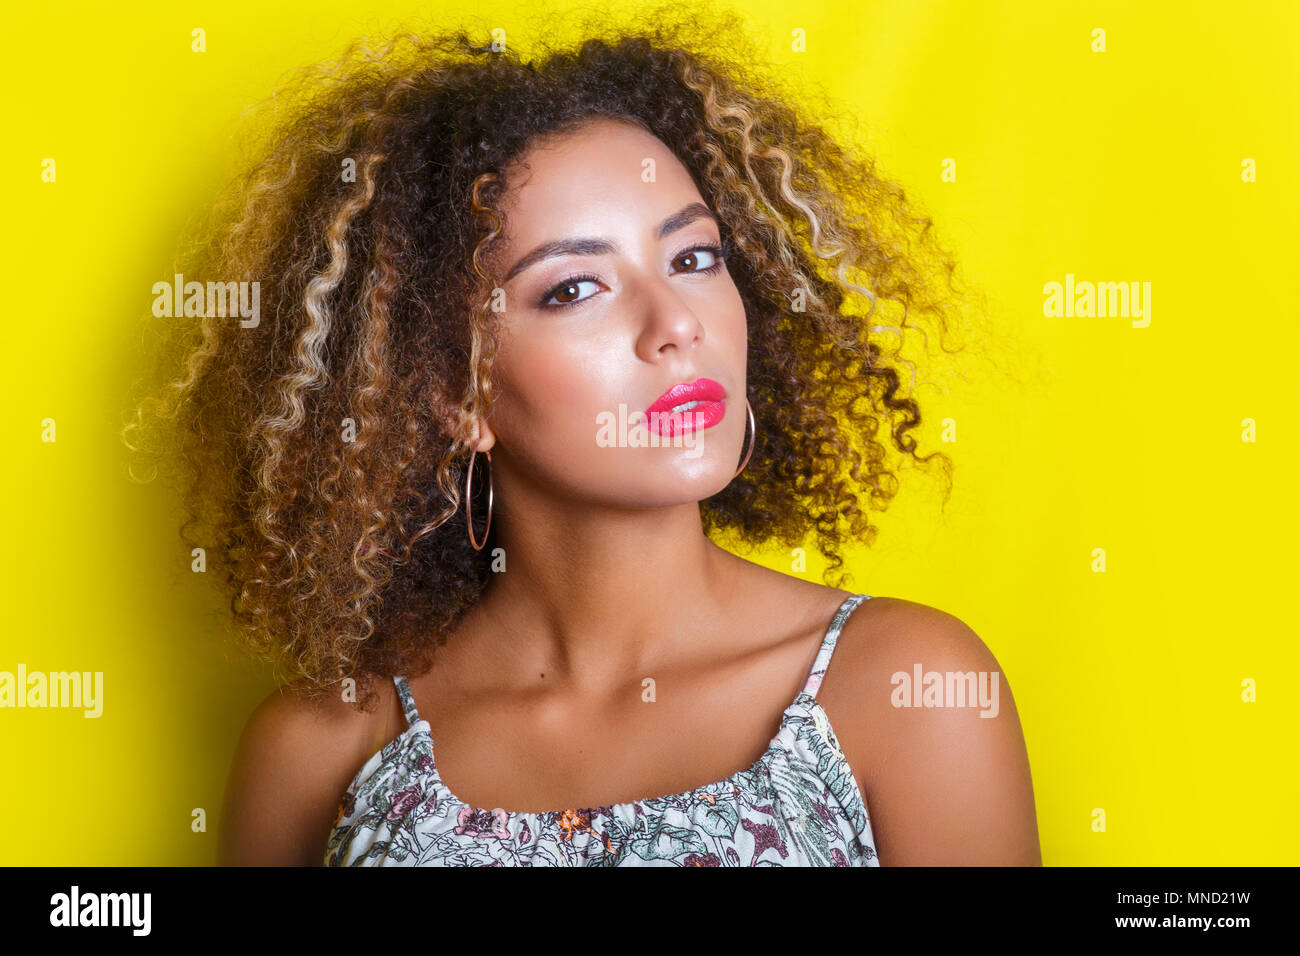 Beauty Portrait Der Jungen Afrikanischen Amerikanischen Madchen Mit Afro Frisur Girl Posiert Auf Gelben Hintergrund An Der Kamera Schaut Stockfotografie Alamy